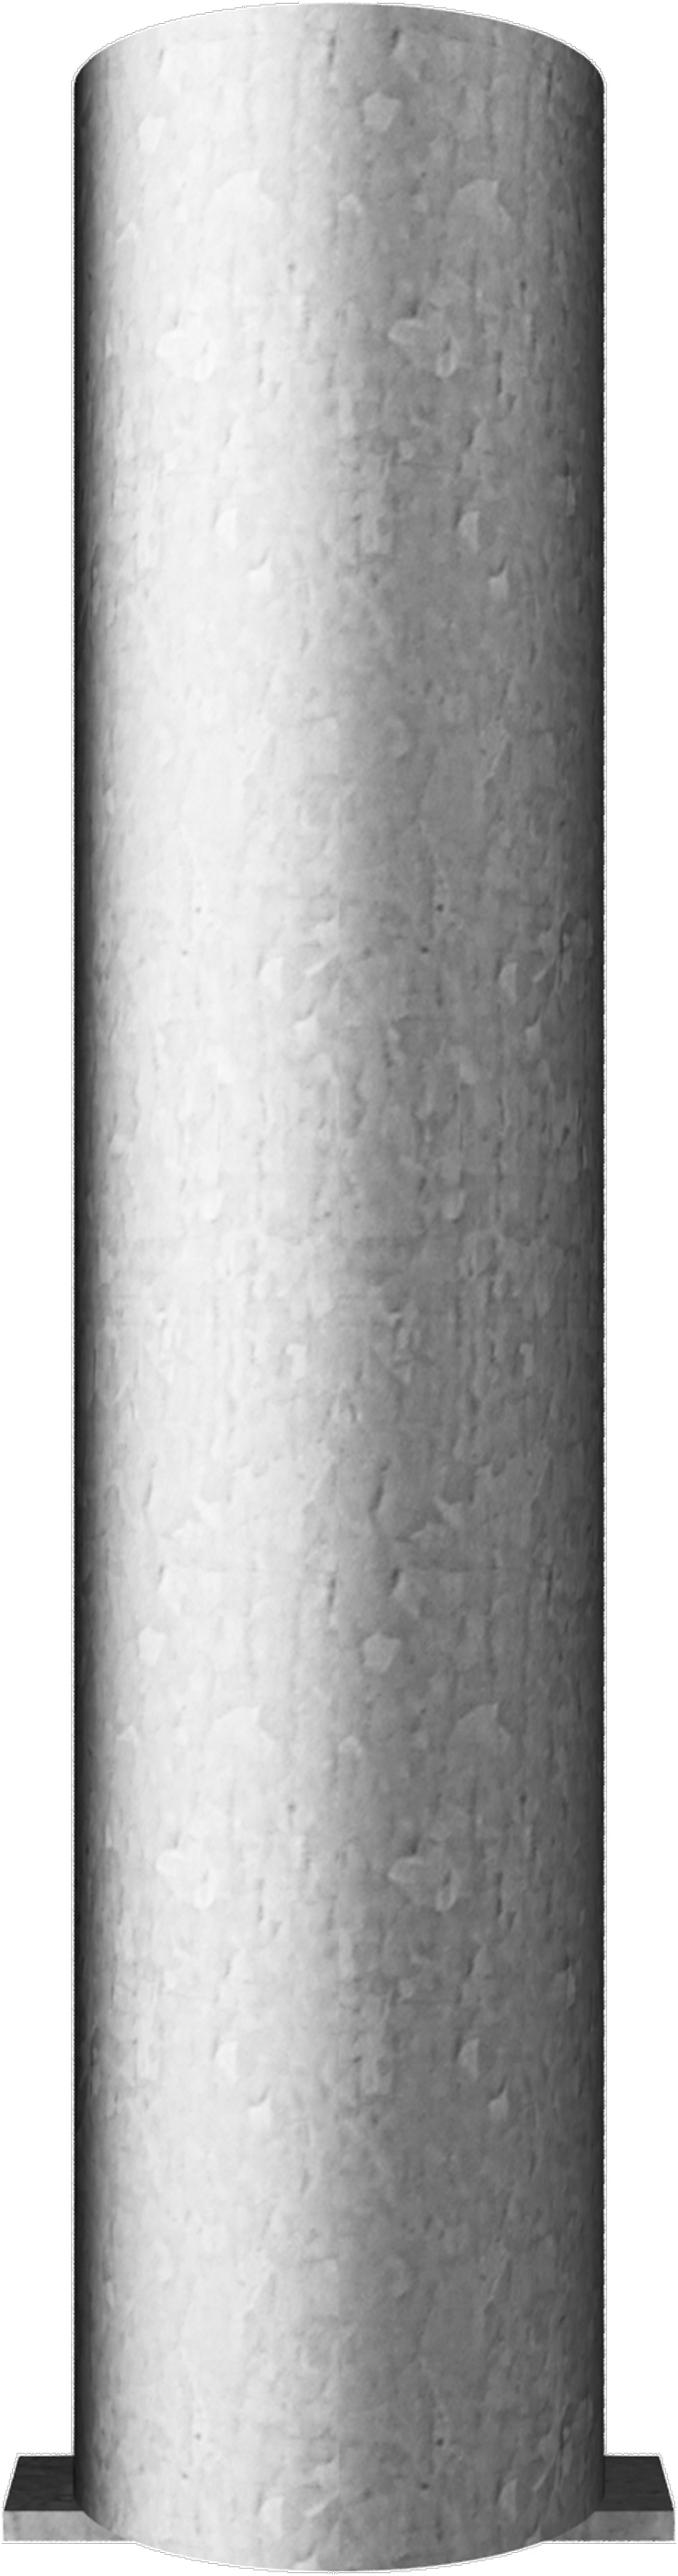 Schake Bodenhülse für Ø 76 mm Pfosten ohne Verschluss